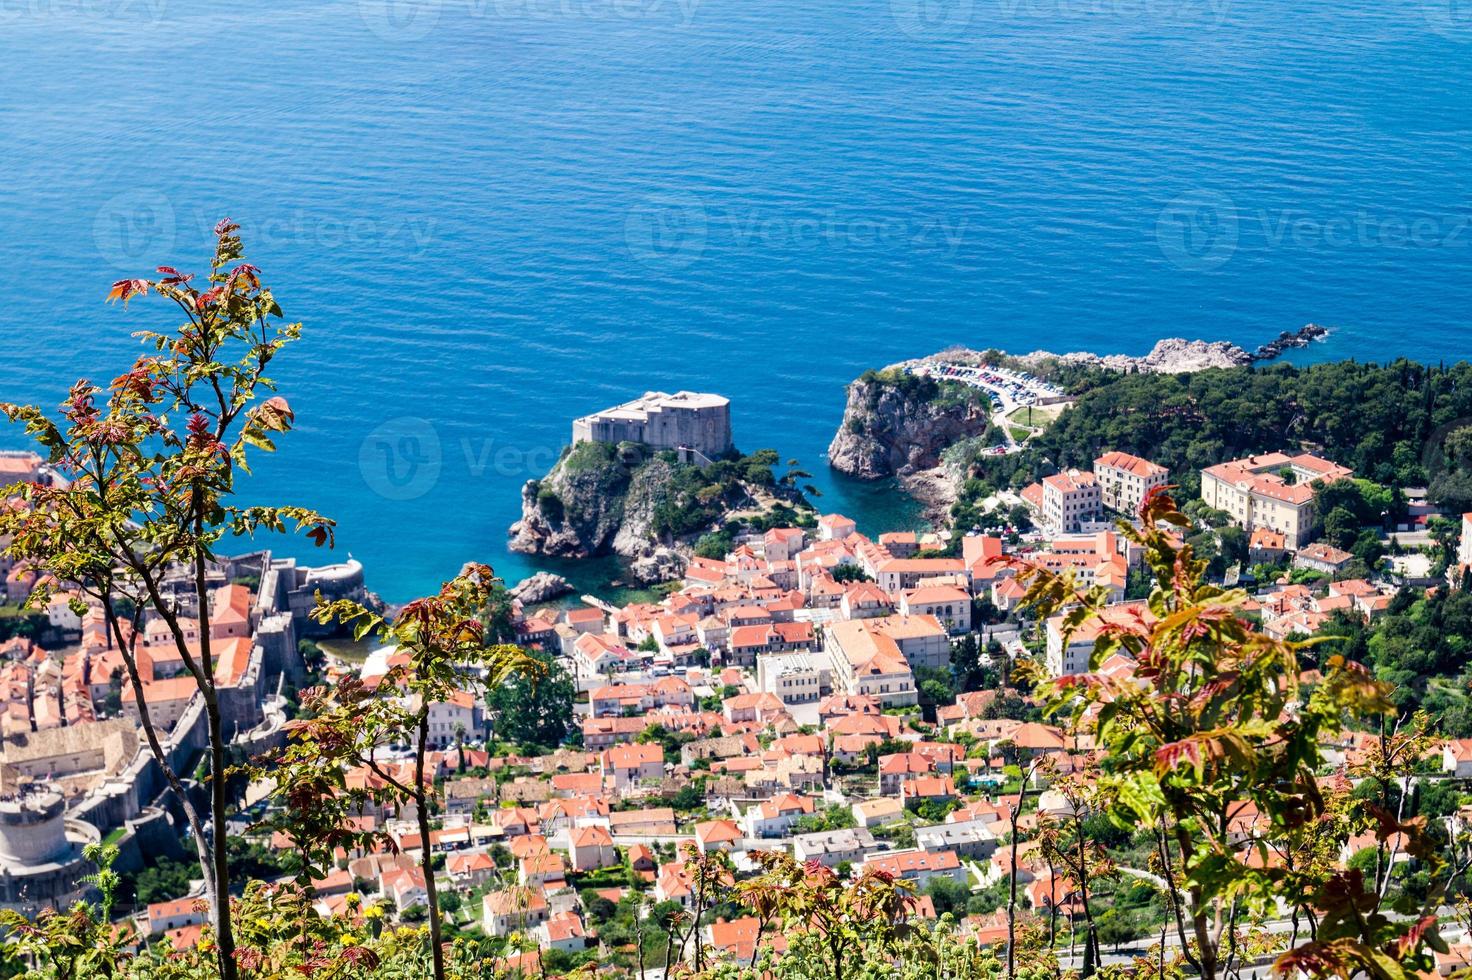 vandringsled från toppen av berget sdr till Dubrovniks gamla stad foto